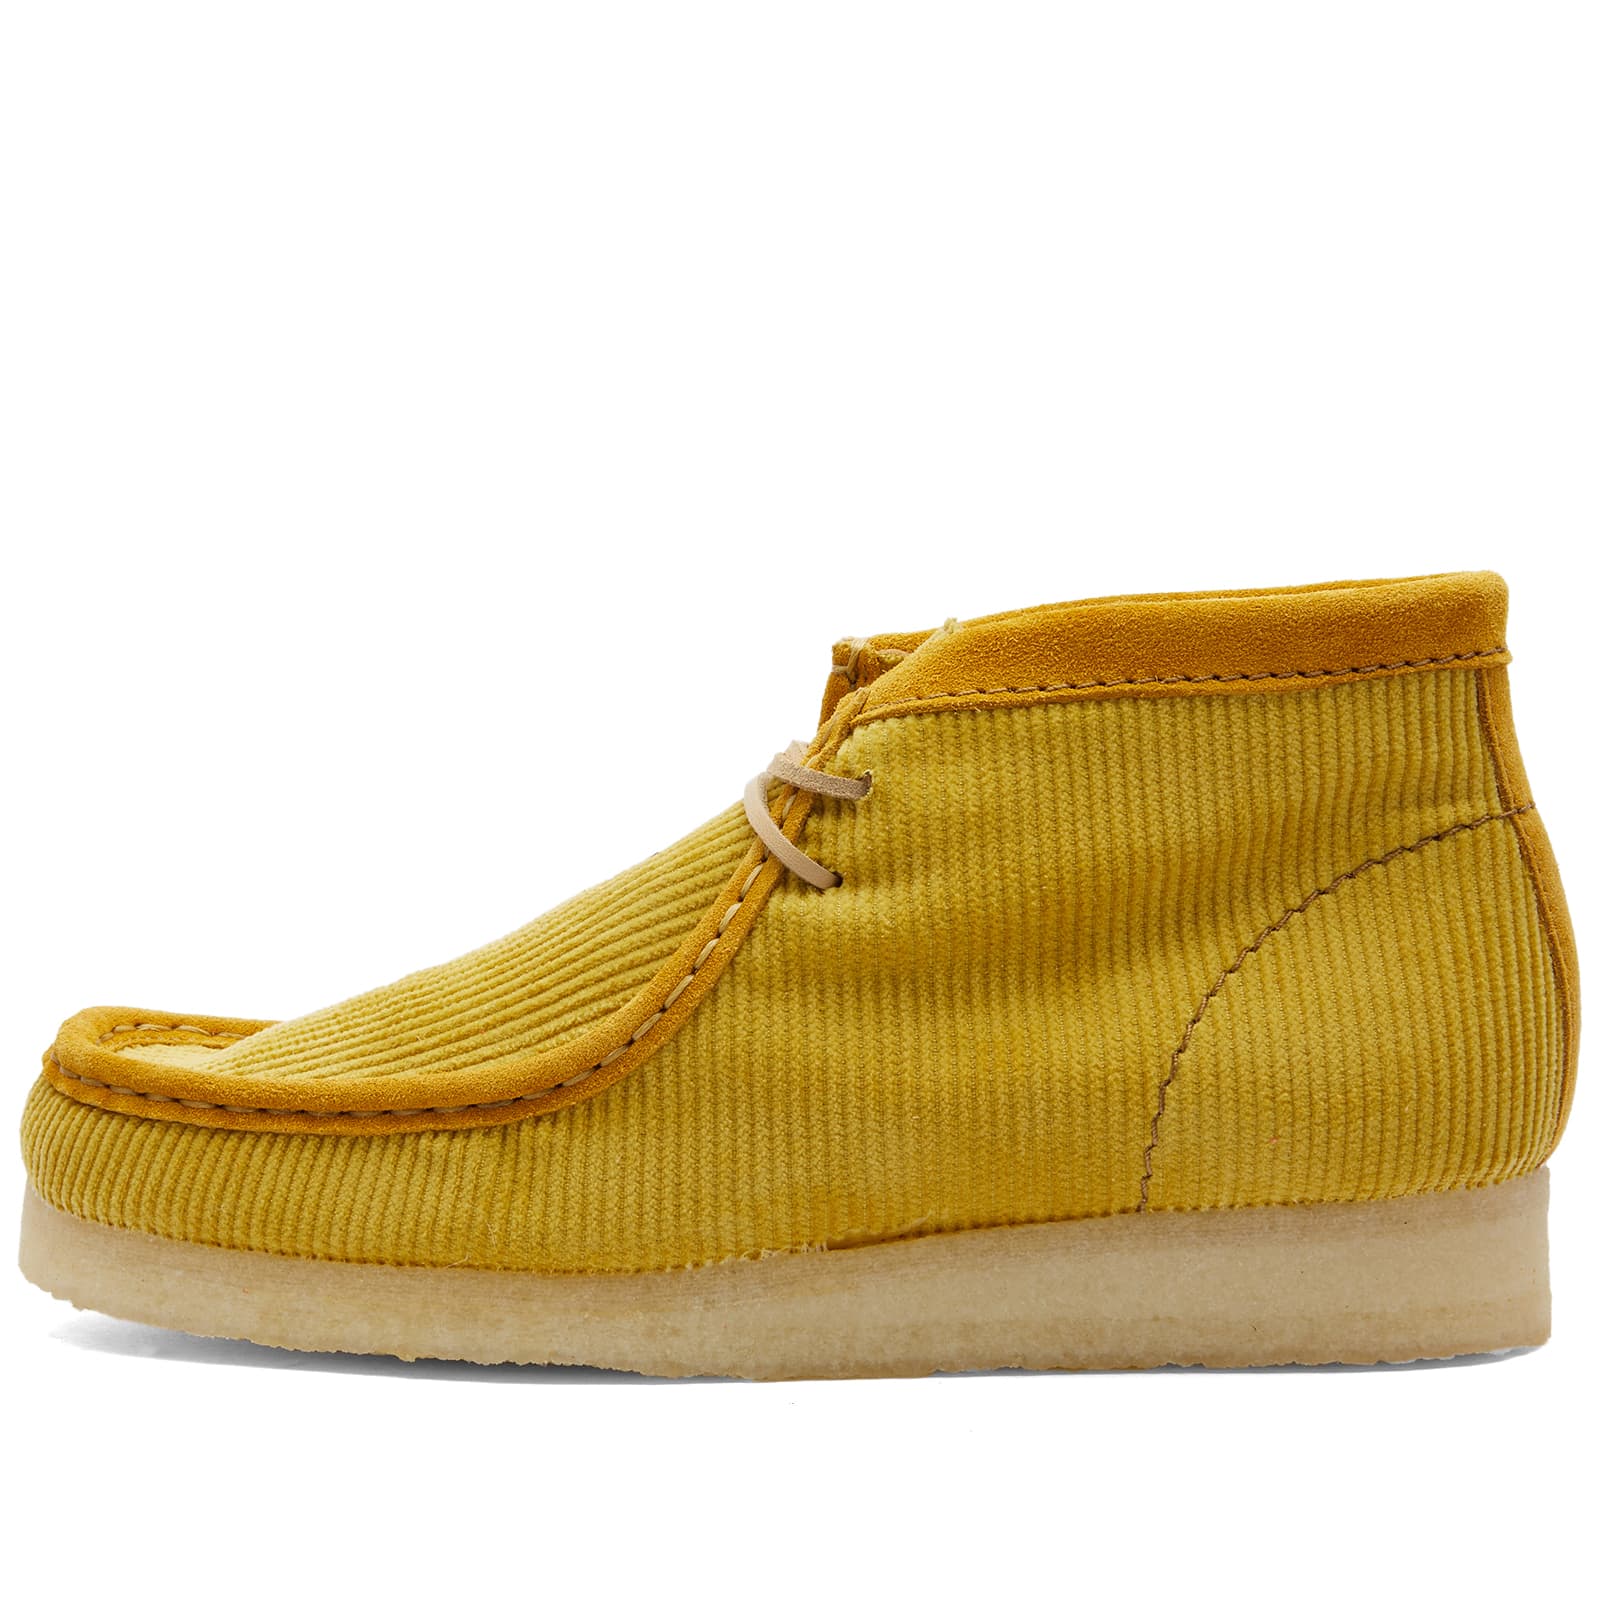 Ботинки Clarks Originals Mayde Wallabee, желтый кроссовки clarks originals zapatillas white